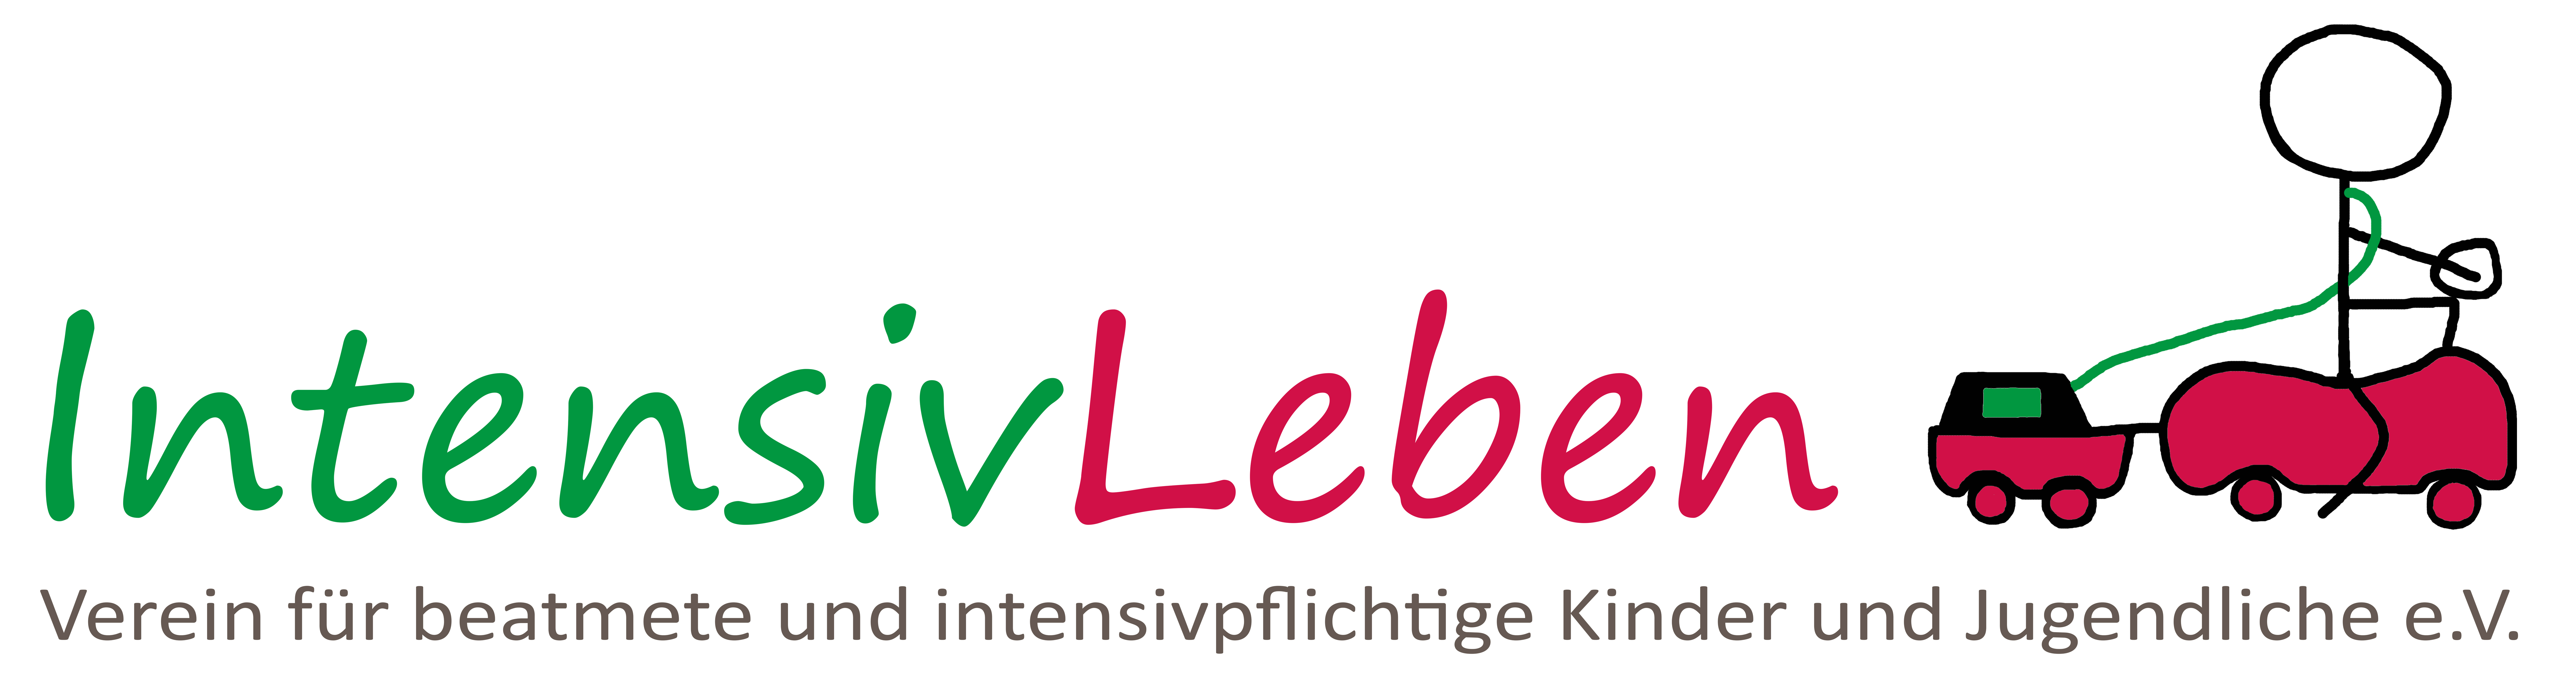 Logo Intensiv Leben - Verein für beatmete und intensiv- pflichtige Kinder und Jugendliche e.V.